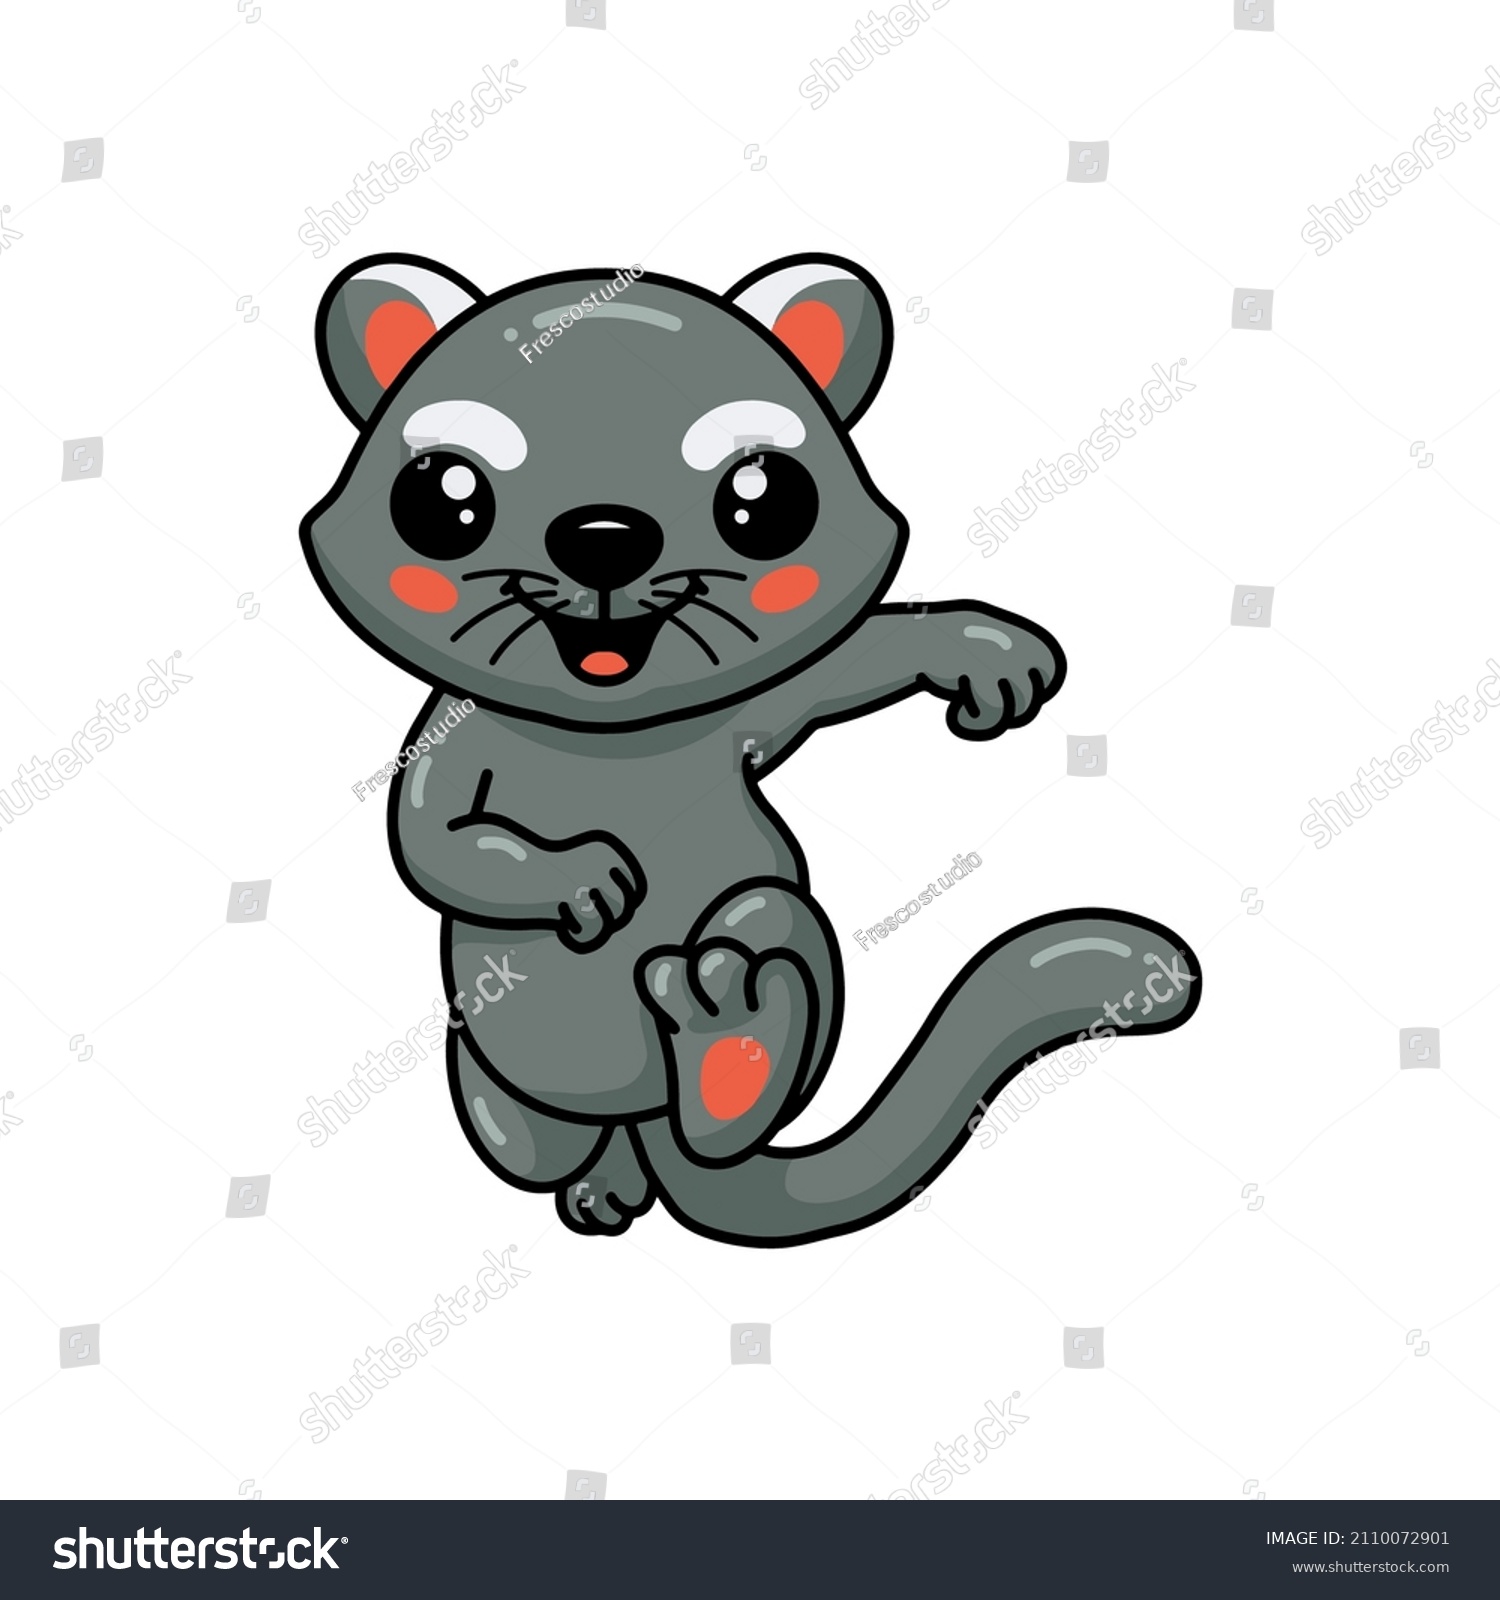 SVG of Cute little bearcat cartoon running svg